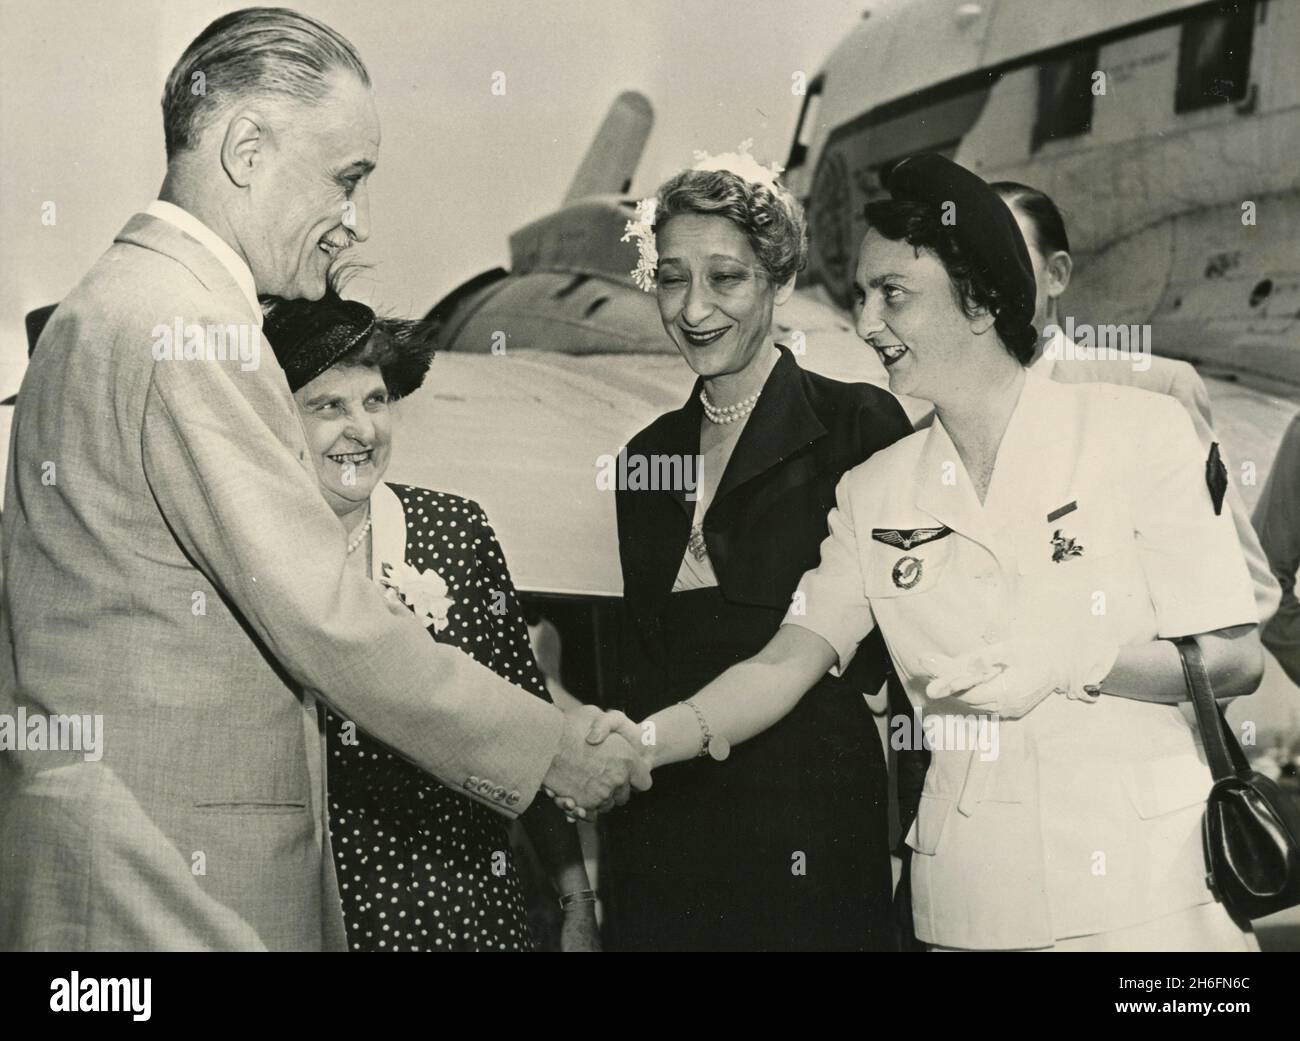 La enfermera de heroína de Dien Bien Phu, Vietnam, Genevieve de Galard Terraube es recibida a su llegada por la Embajadora francesa a los Estados Unidos y su esposa, USA 1954 Foto de stock